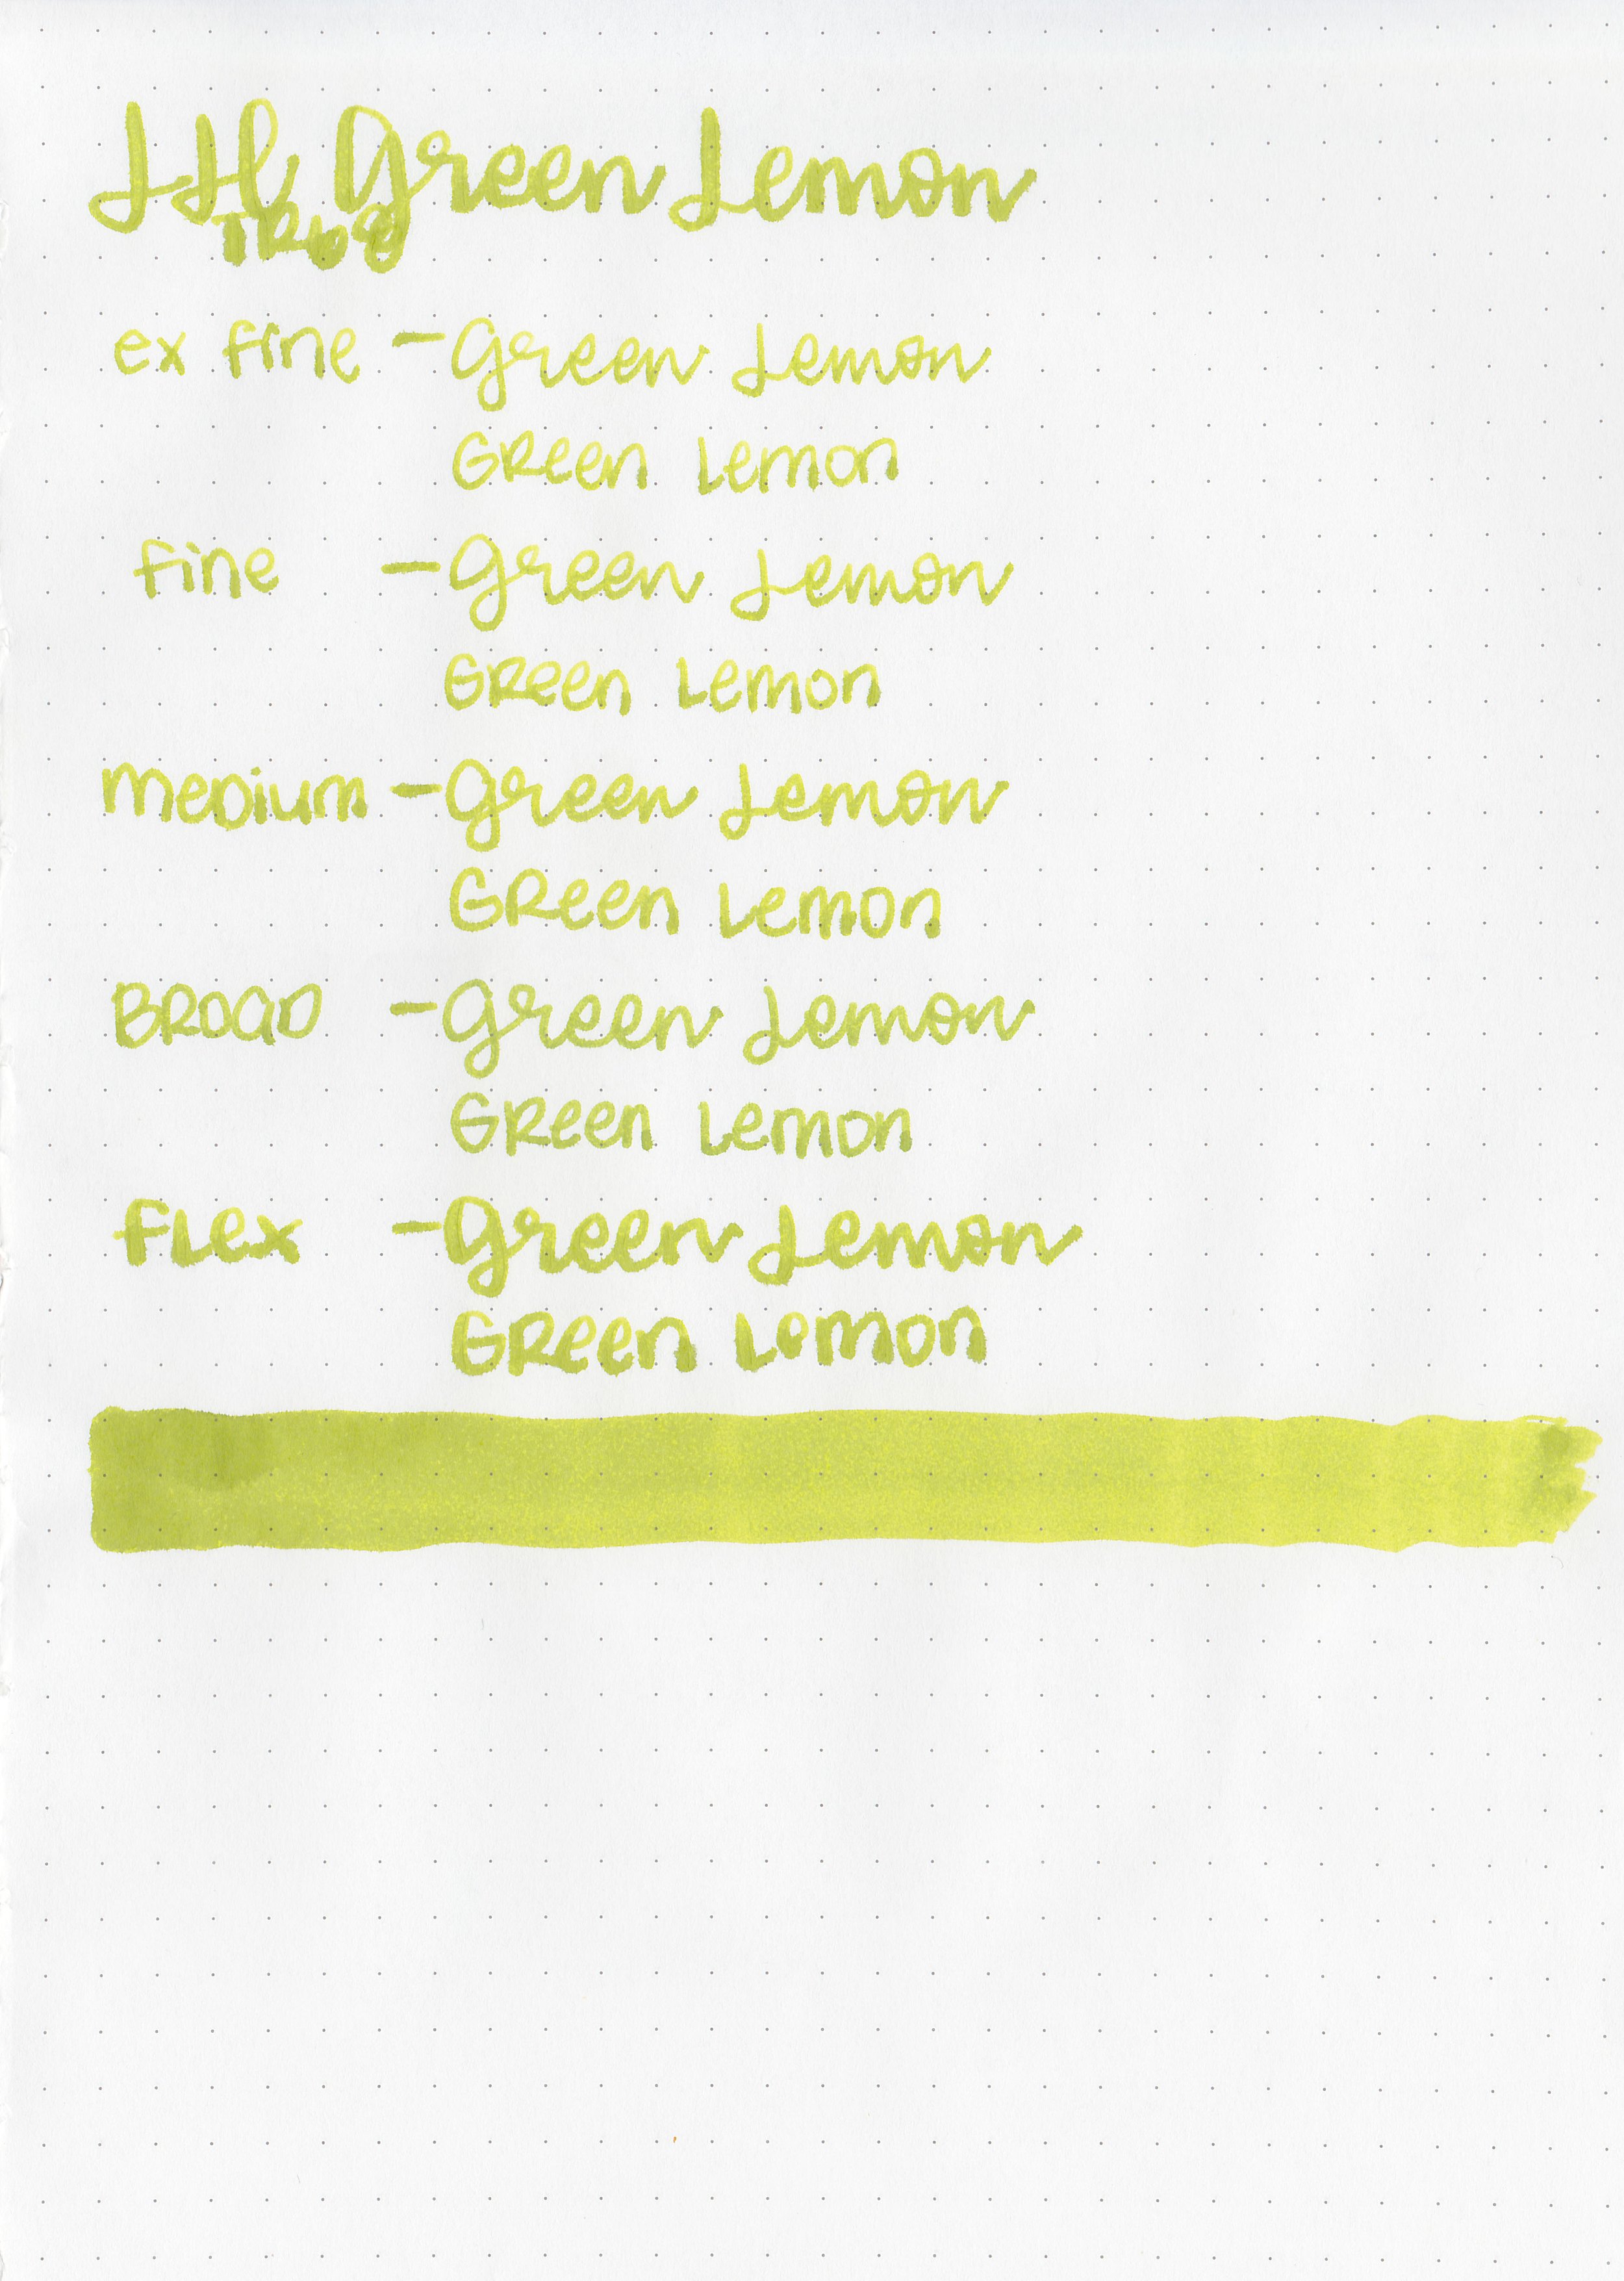 jh-green-lemon-11.jpg